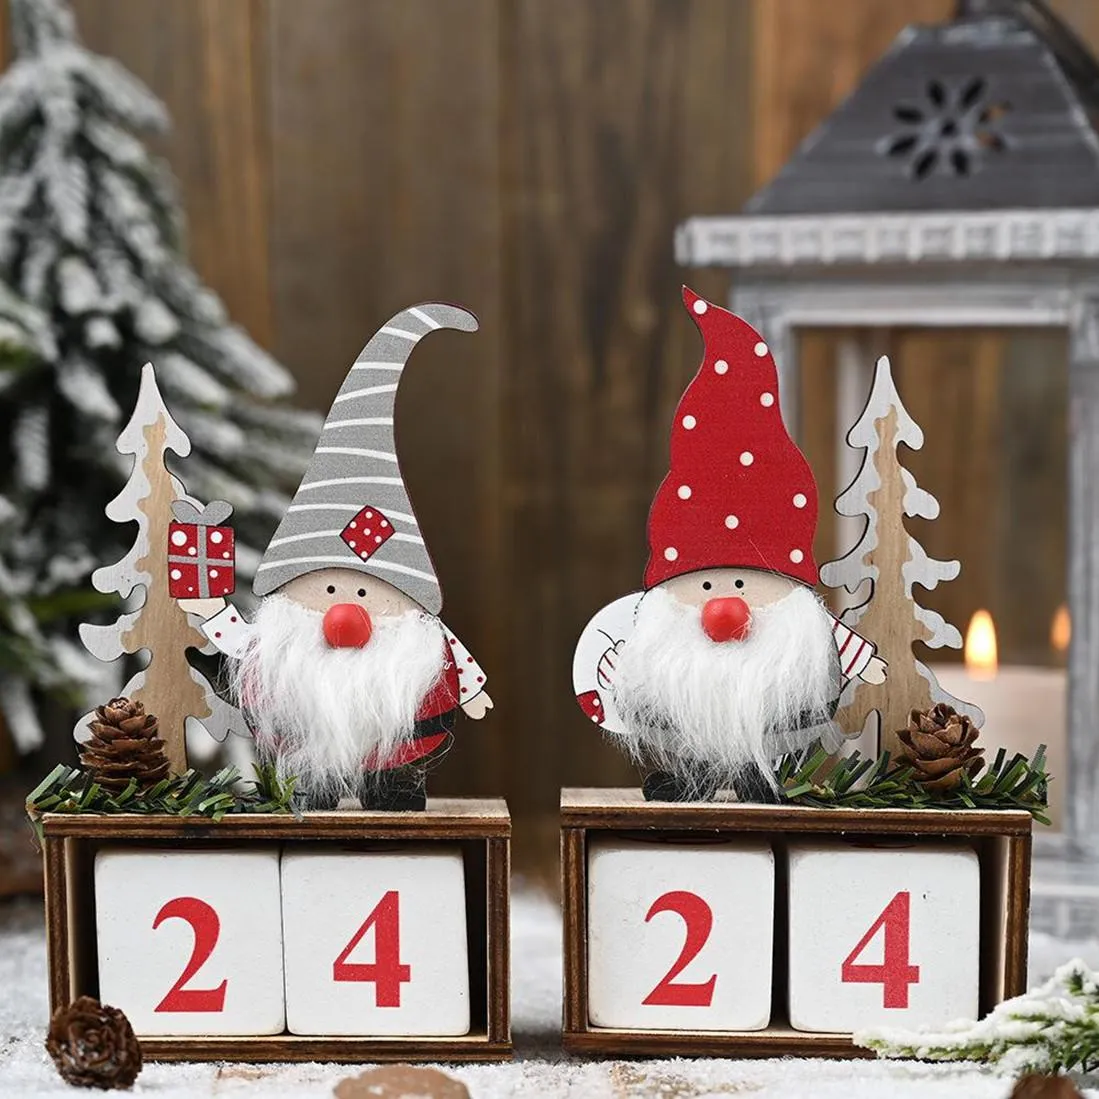 Boże Narodzenie Desktop Ornament Santa Claus Gnome Drewniany Kalendarz Advent Odliczanie Dekoracji Home Tabletop Decor